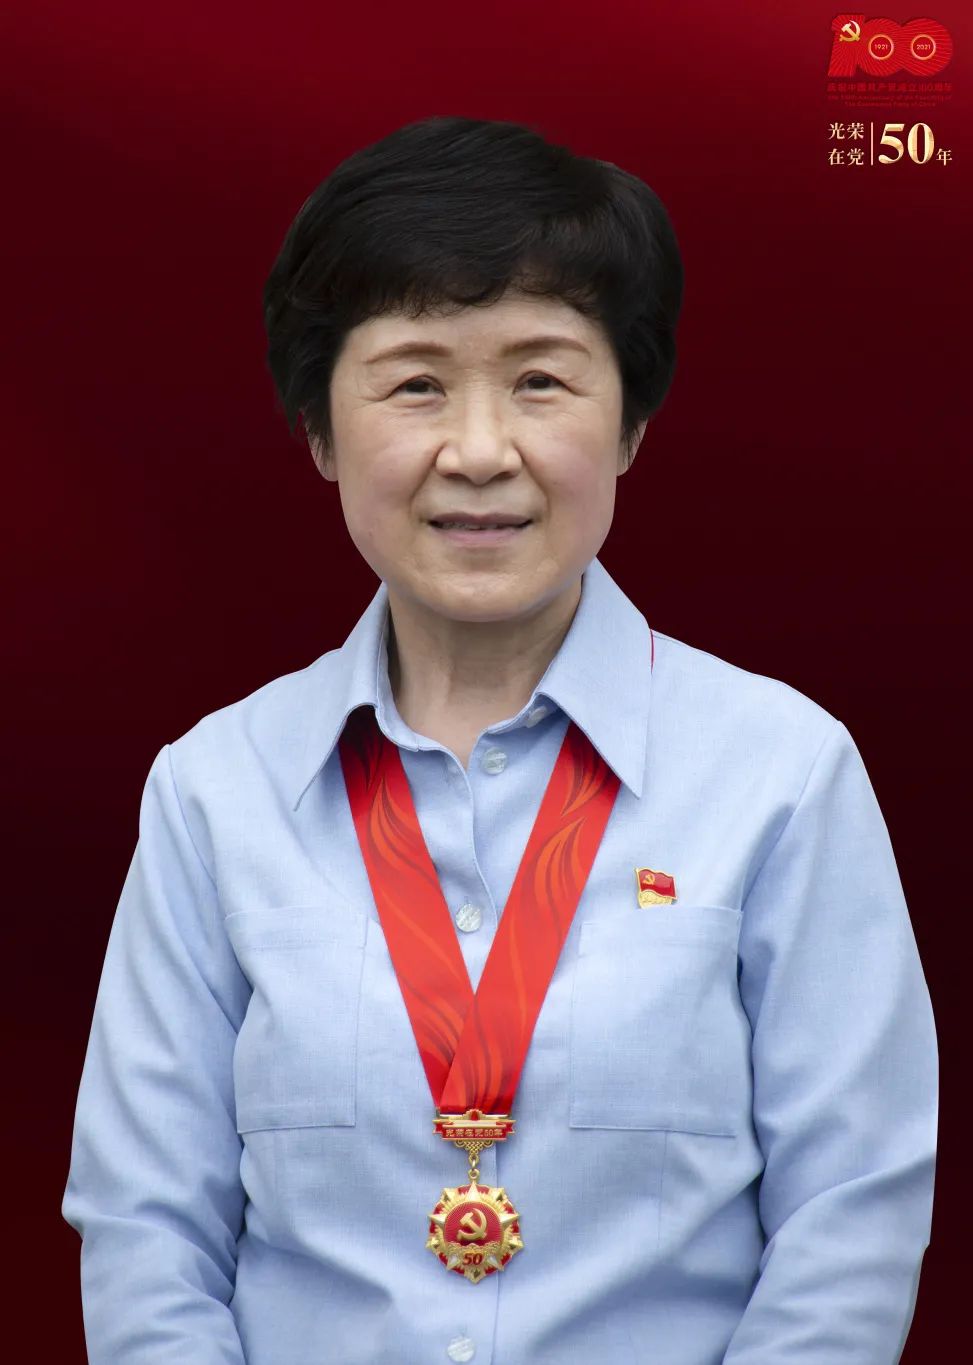 新泾镇为光荣在党50年的老党员拍摄金章纪念照